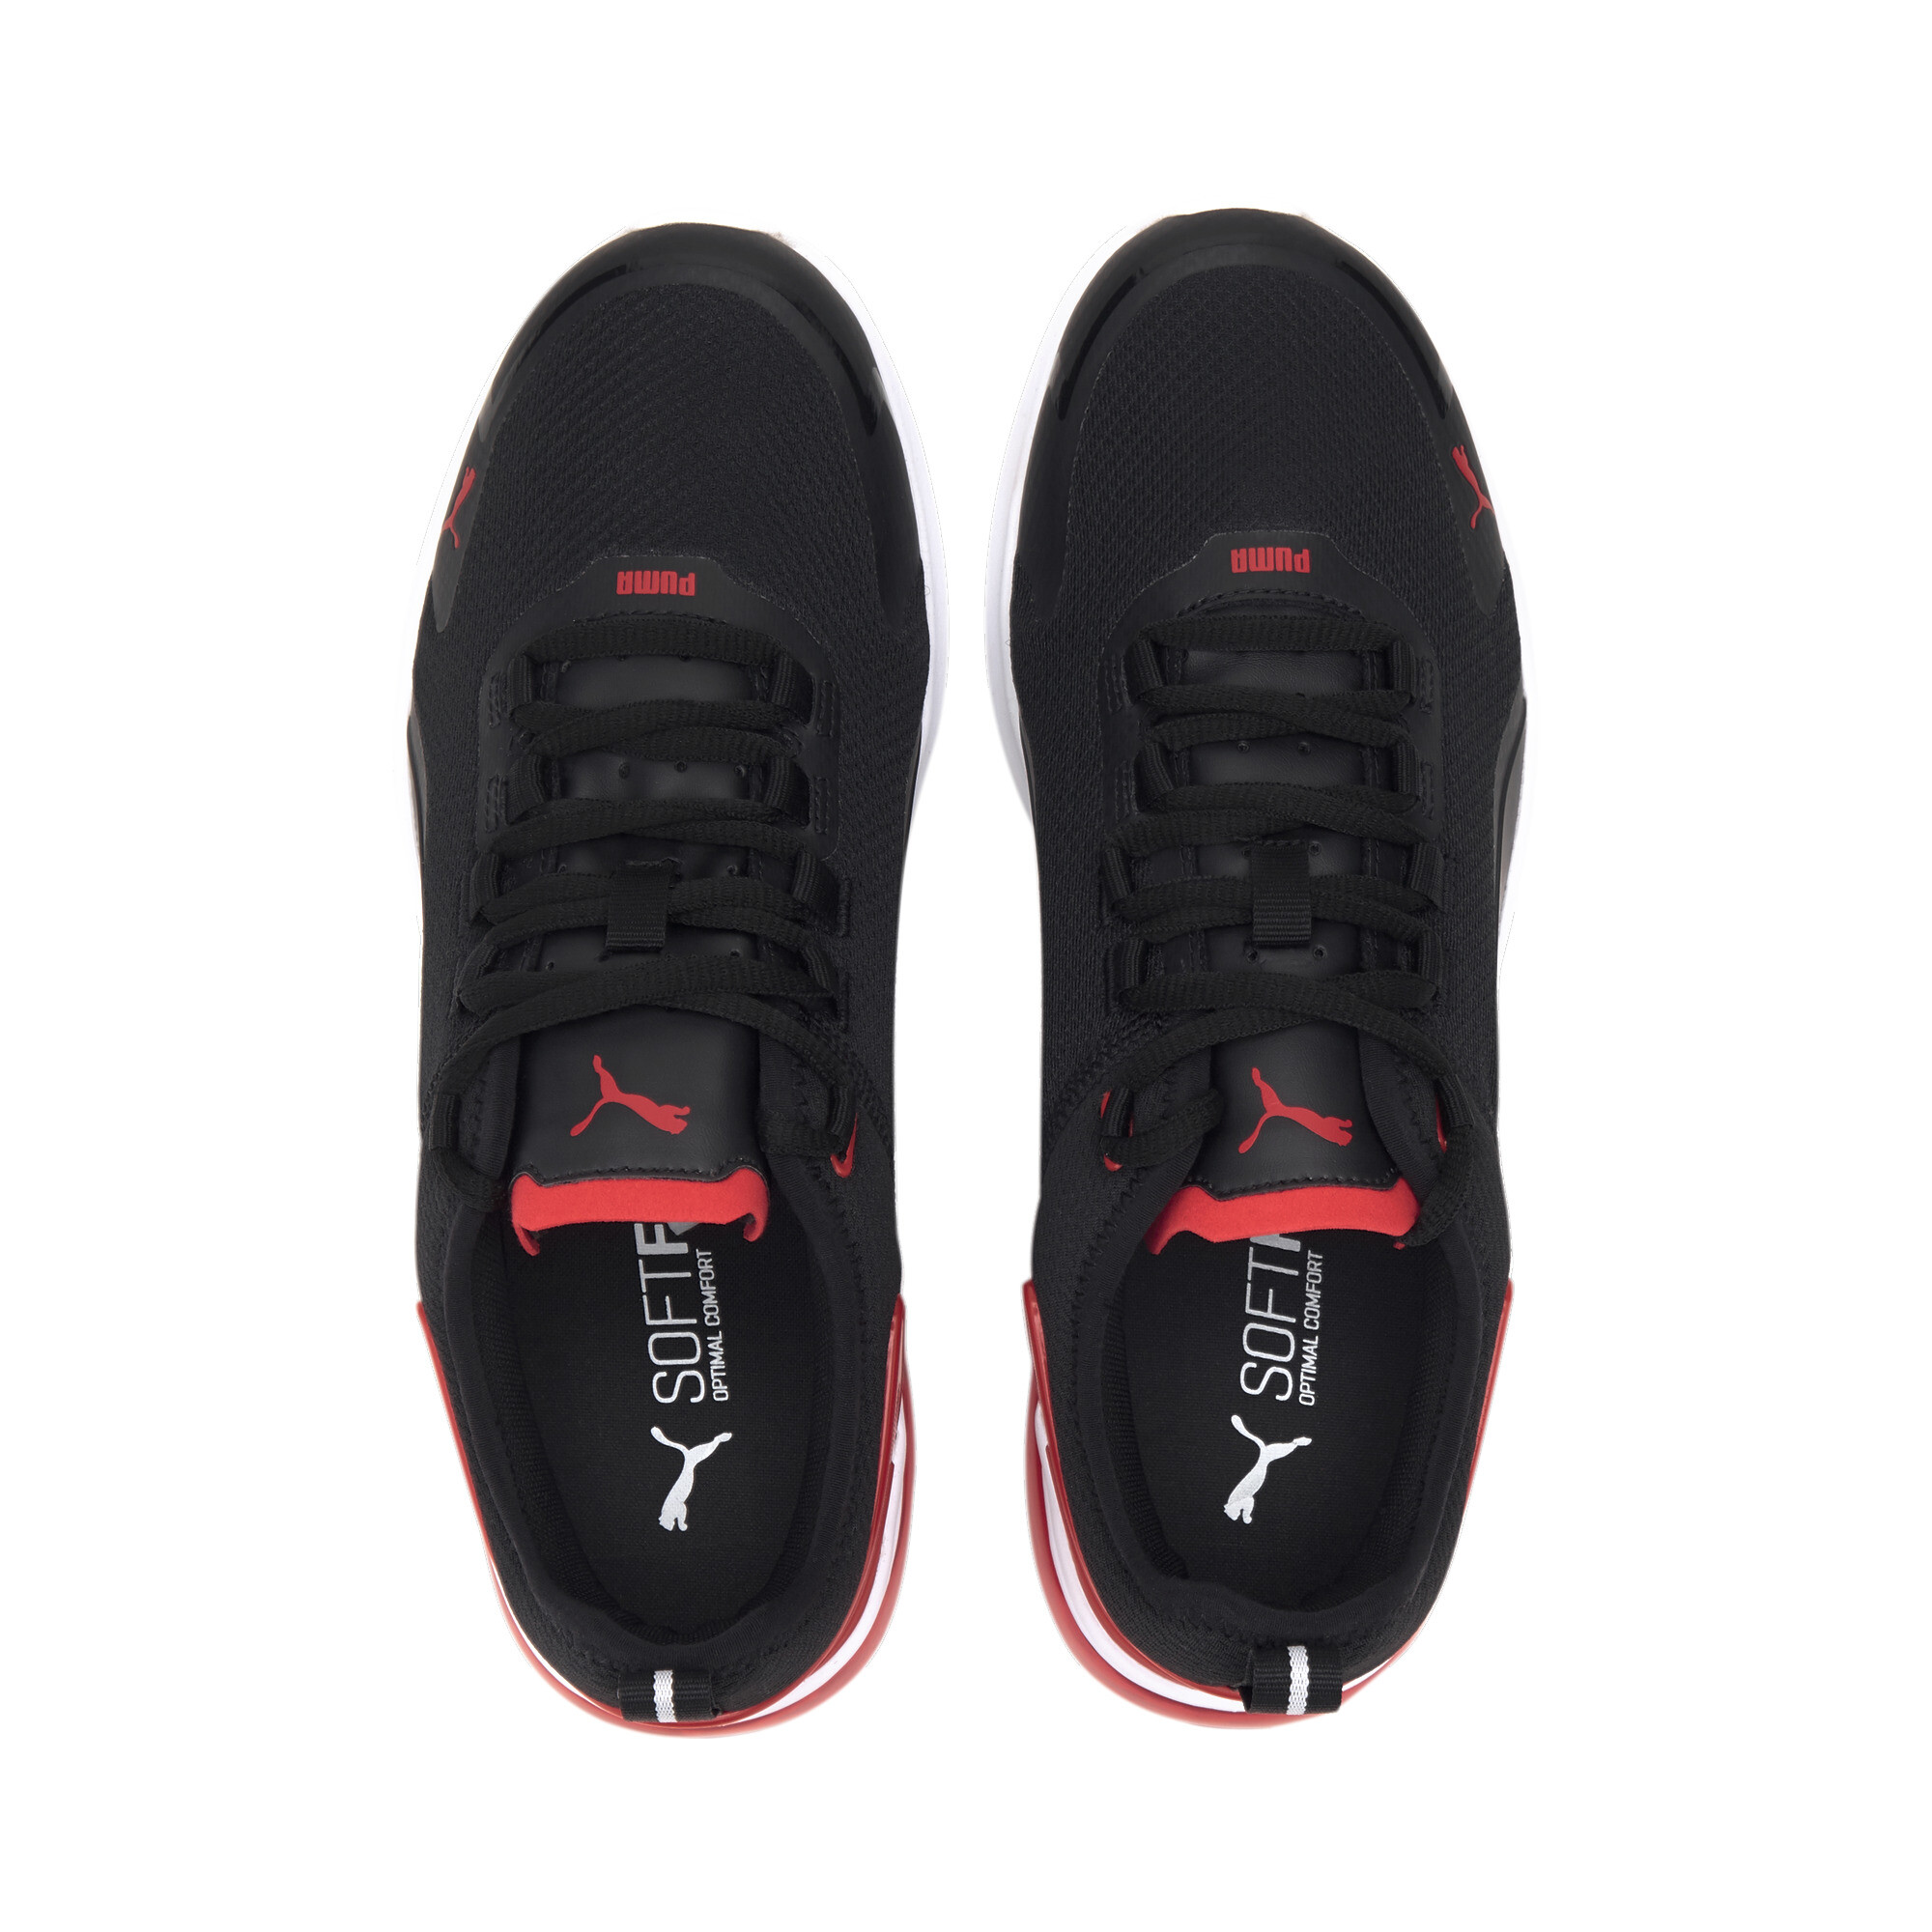 Indexbild 7 - PUMA Electron Street Era Sneaker Unisex Schuhe Basics Neu